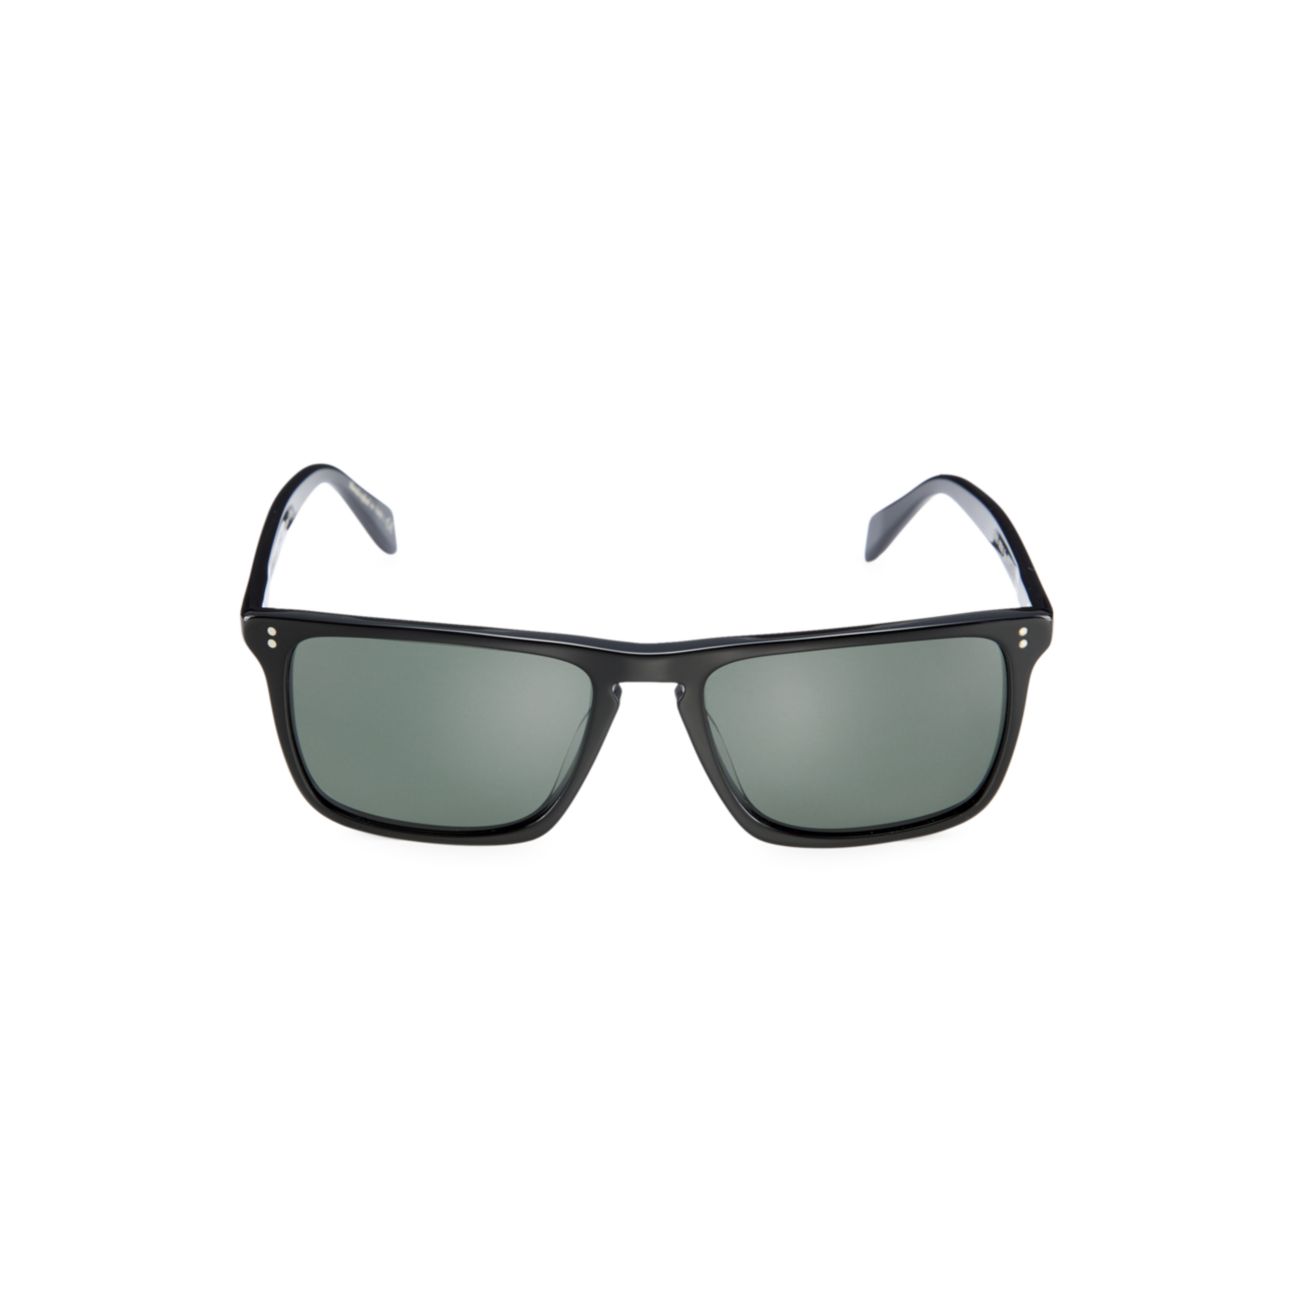 Прямоугольные солнцезащитные очки Bernardo 56 мм Oliver Peoples